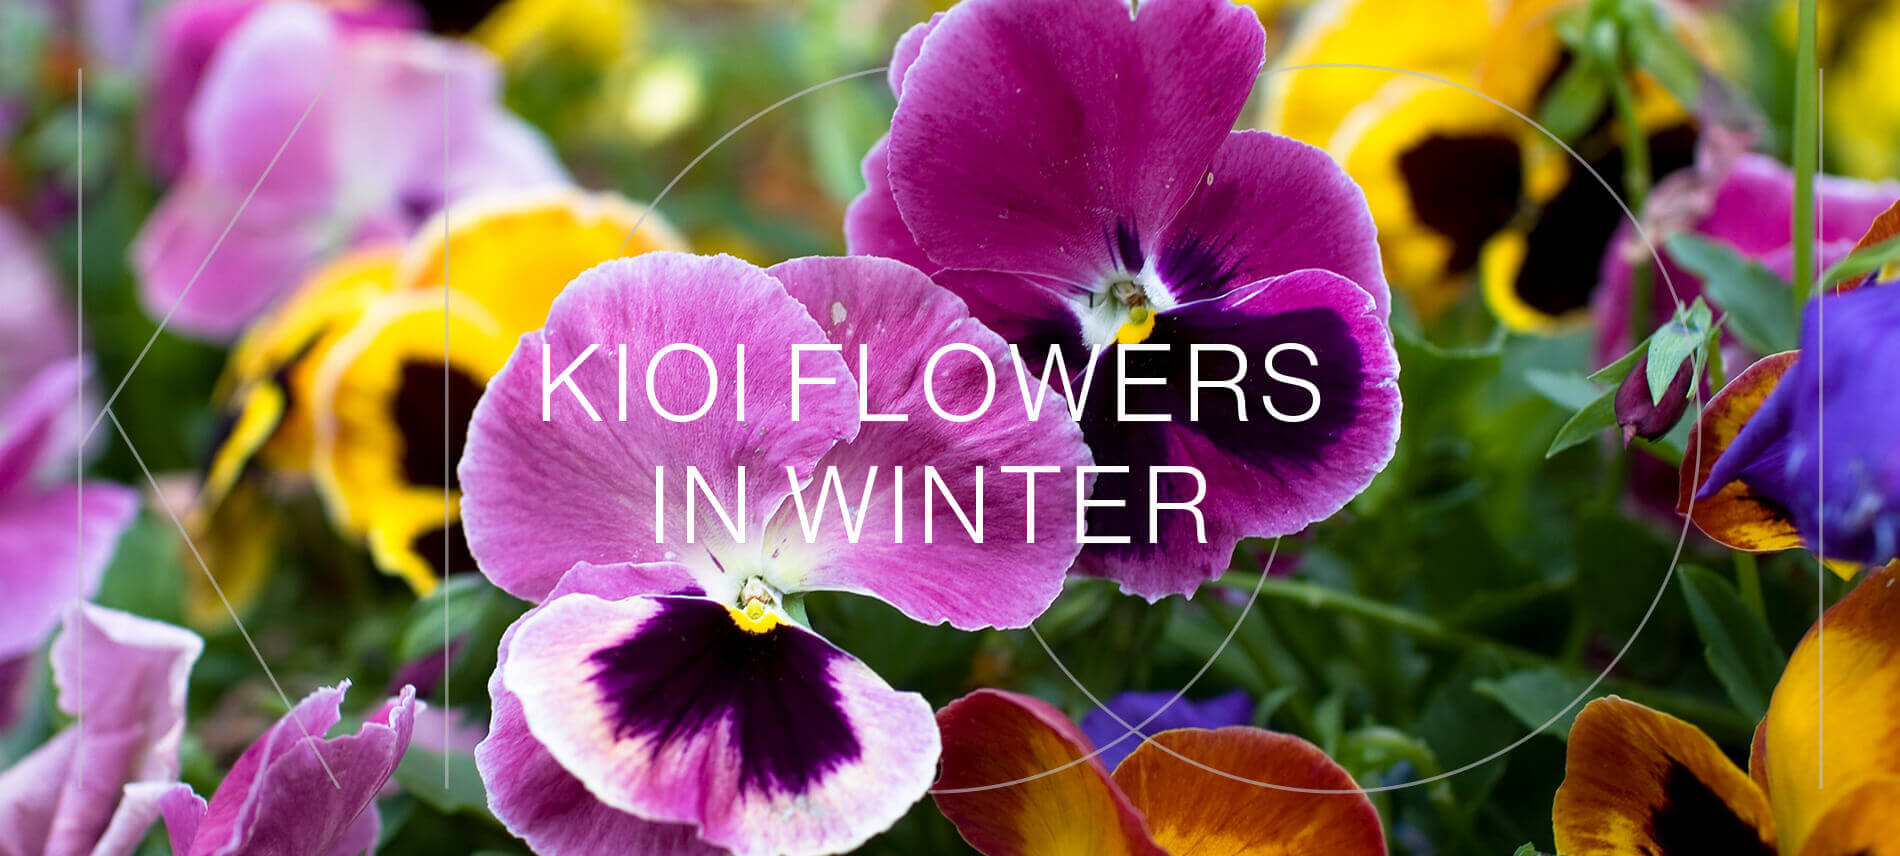 KIOI FLOWERS IN WINTER